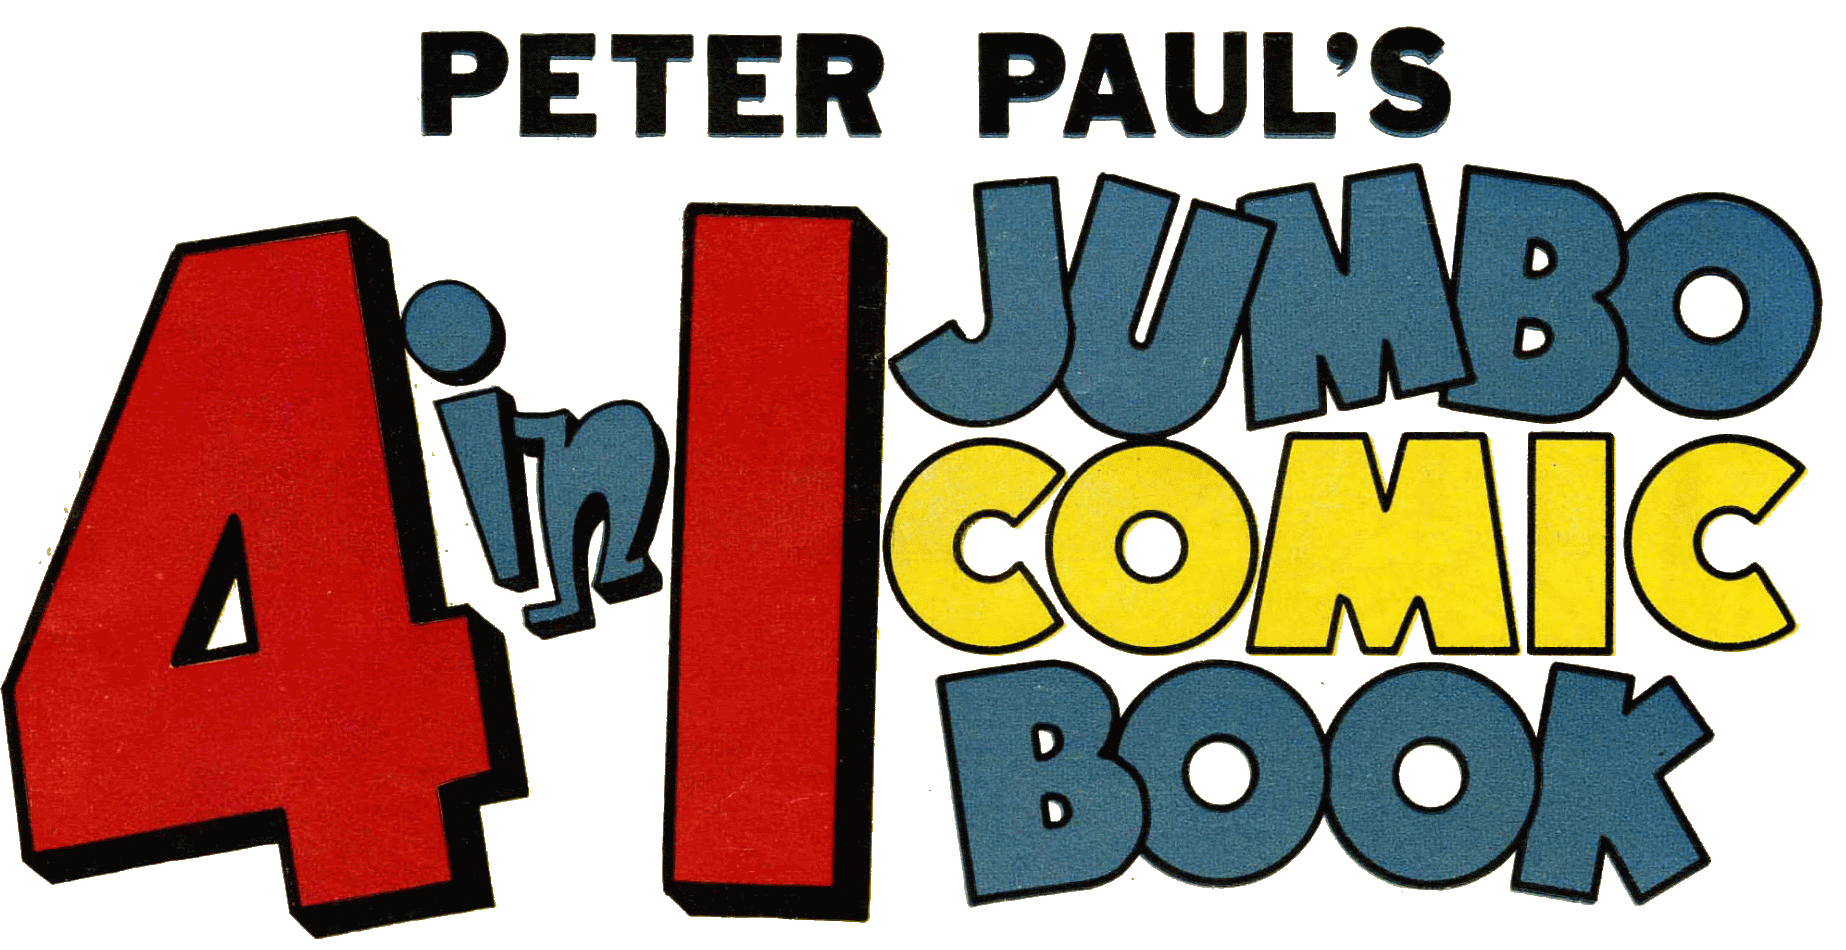 Peter Paul's 4-in-1 Comic Book logo